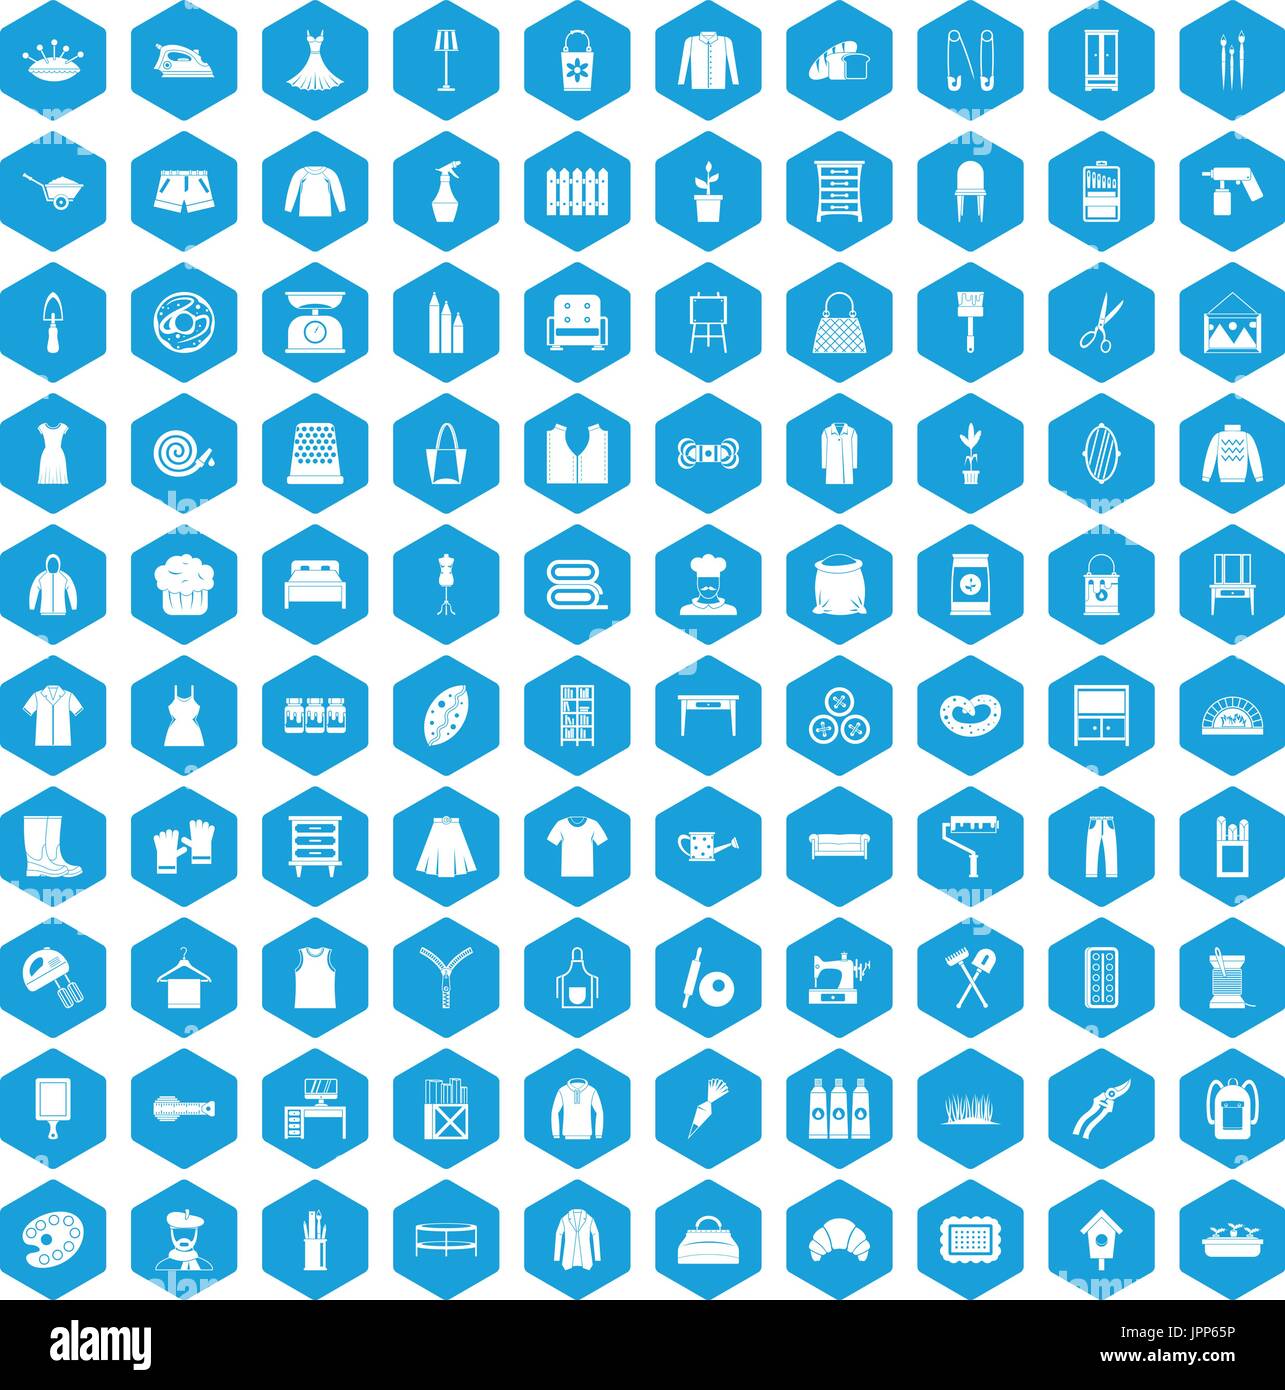 100 Handarbeit Icons set blau Stock Vektor